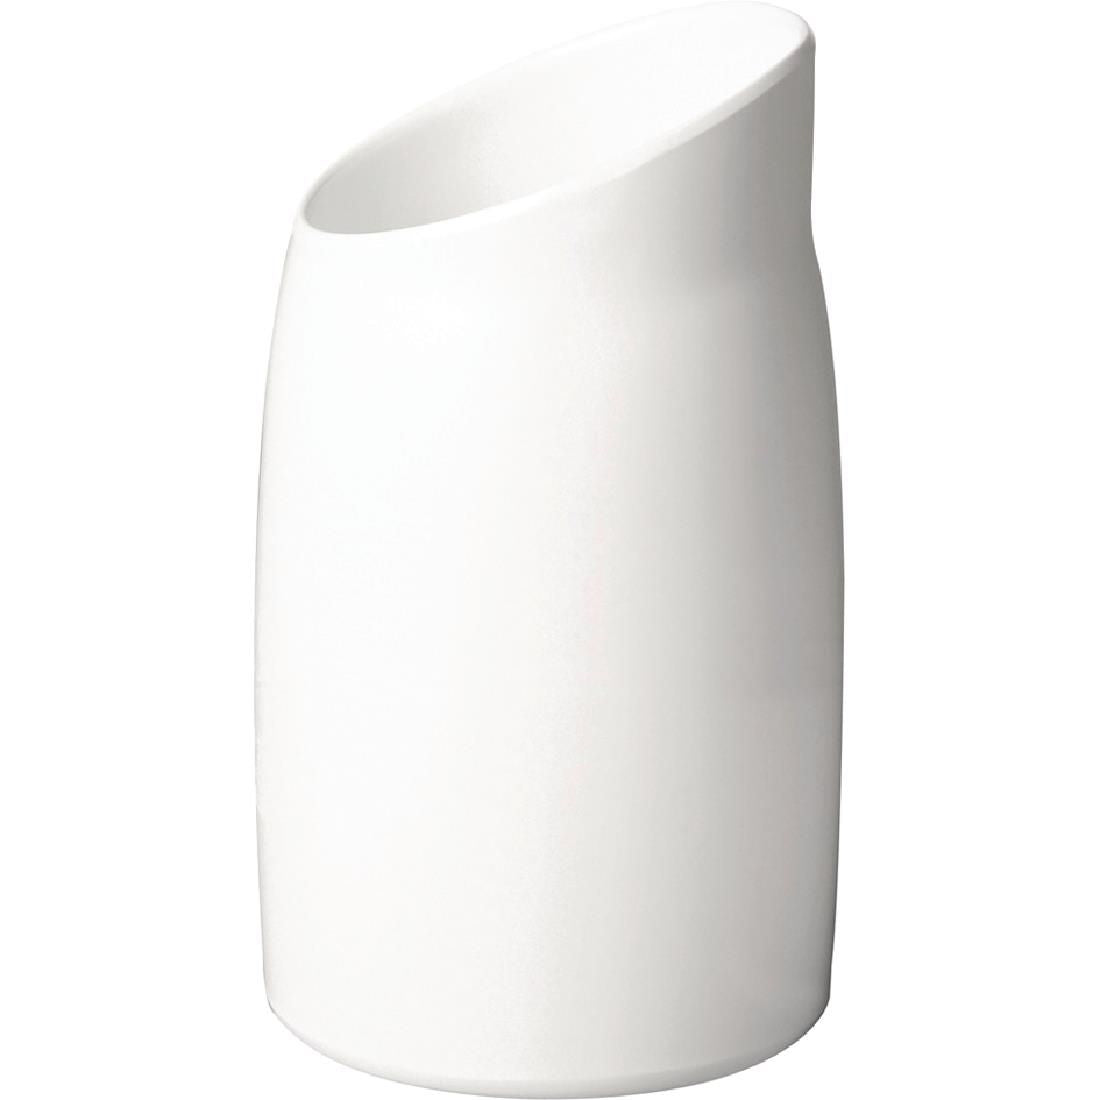 APS Casual Dressing Pot Melamine White 1Ltr - GK849 JD Catering Equipment Solutions Ltd